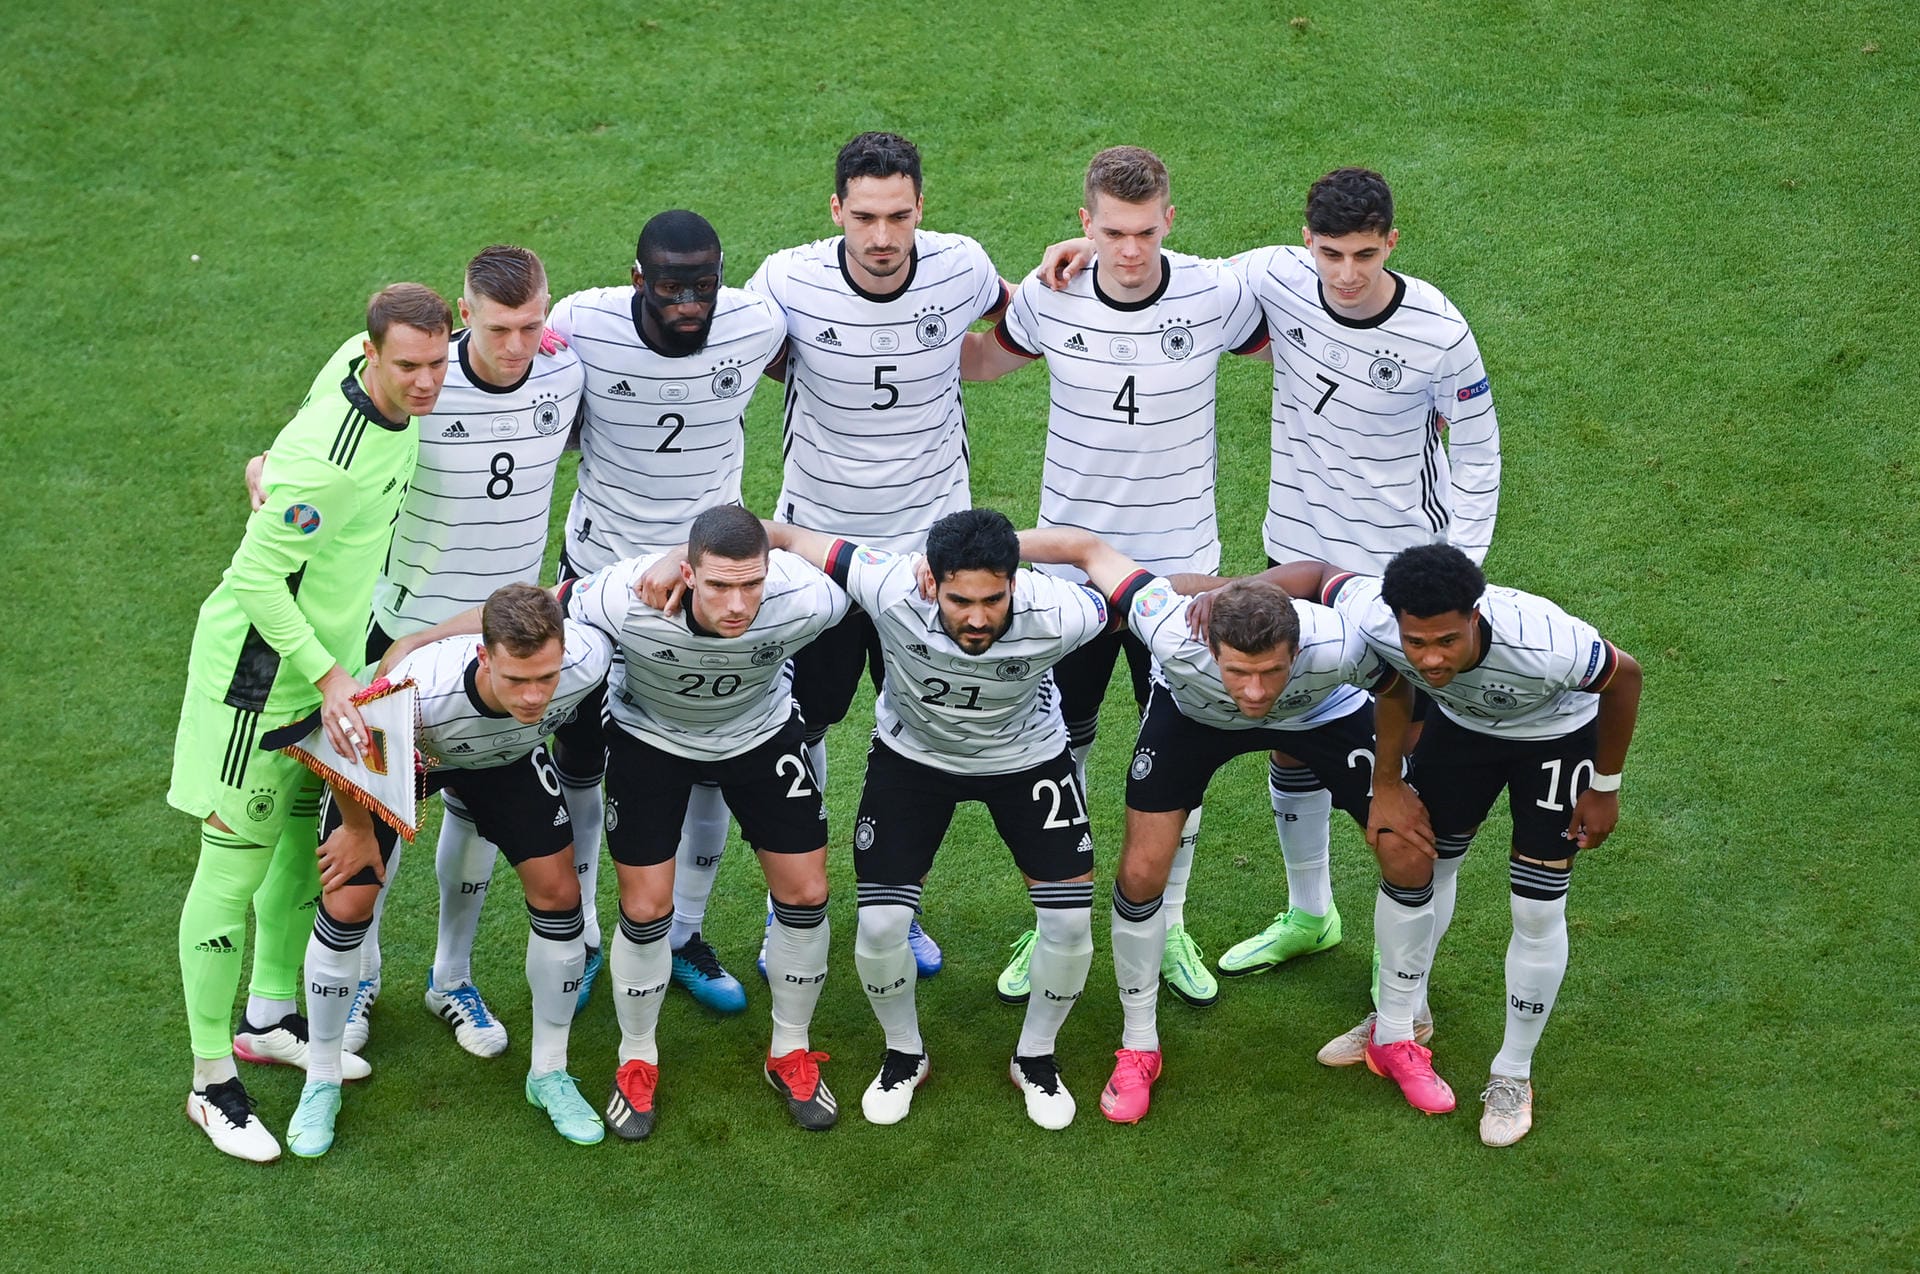 Nach der Auftaktniederlage gegen Frankreich konnte die deutsche Mannschaft gegen Portugal Wiedergutmachung betreiben. Man gewann mit 4:2. Besonders ein Spieler konnte dabei überzeugen. Die Einzelkritik.